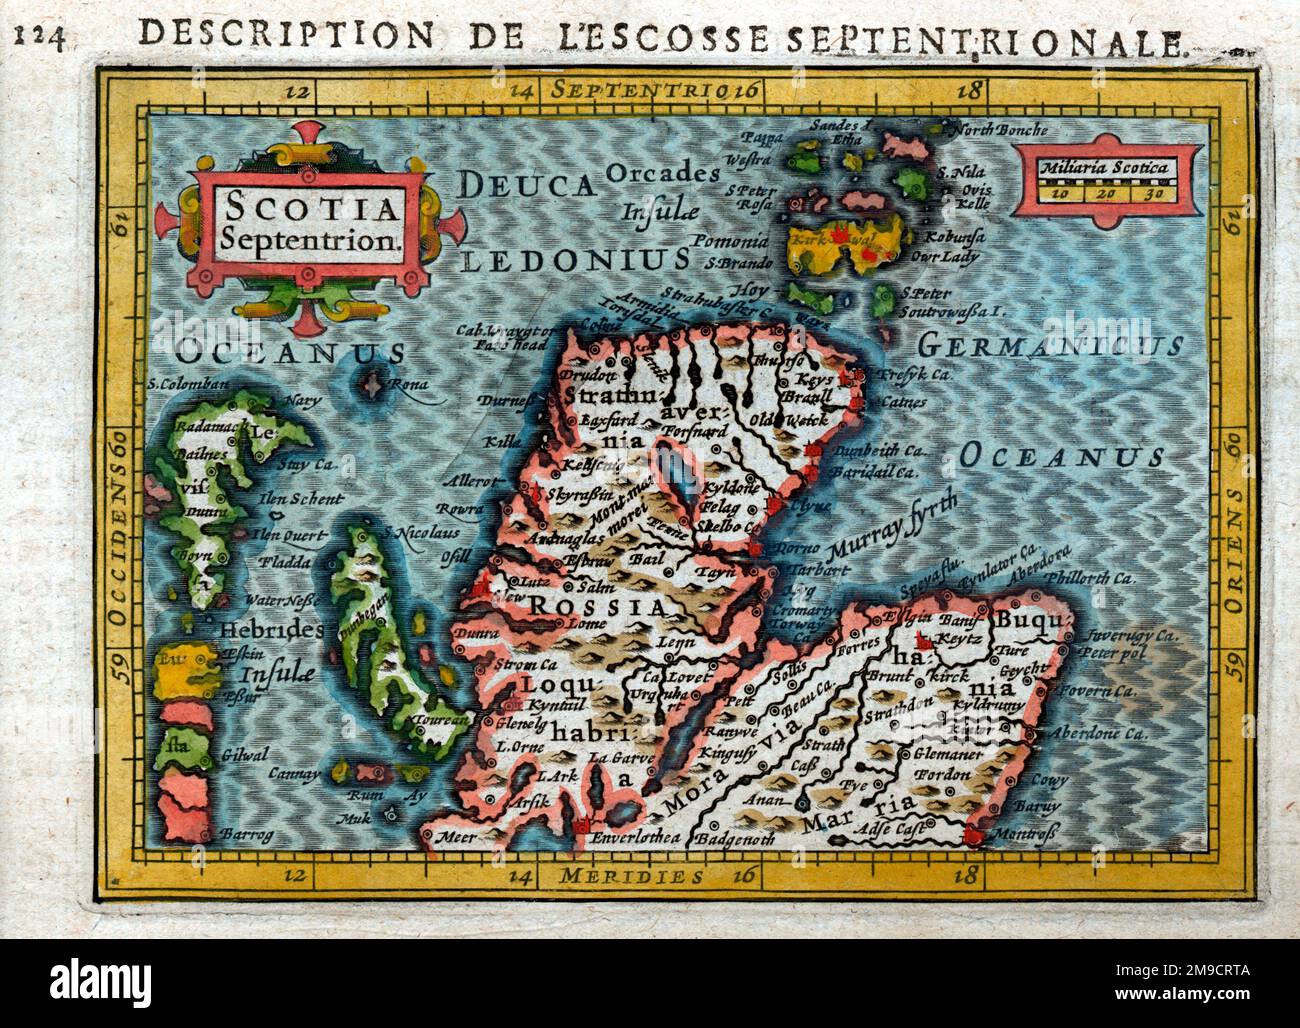 Scotia Septentrion - Mappa del 17th° secolo della Scozia settentrionale Foto Stock